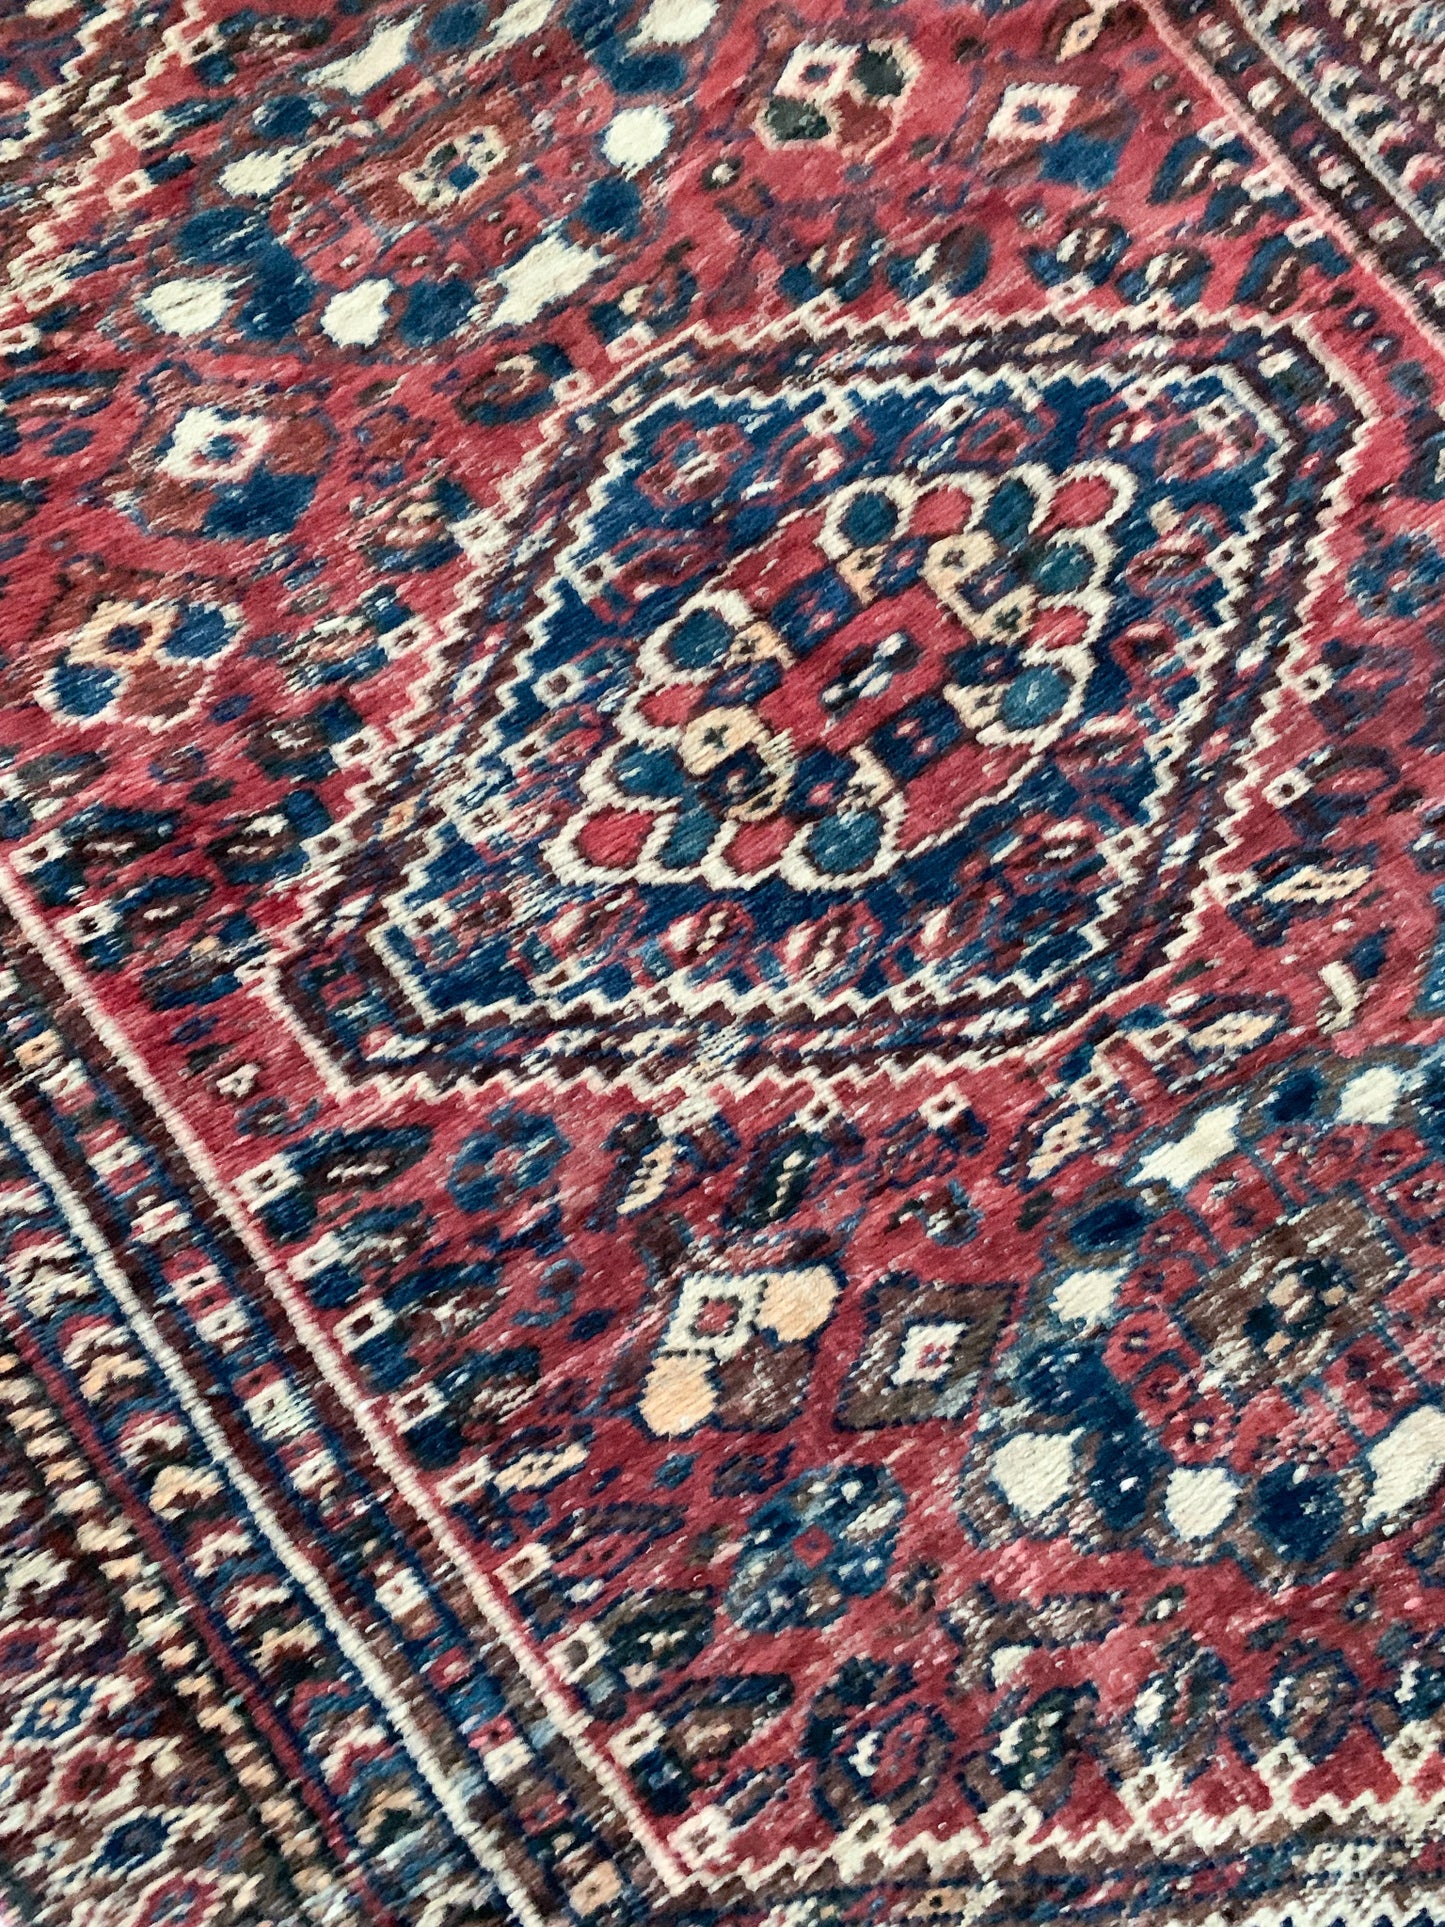 A1122 - 4.5' x 6.1' Vintage Persian Shiraz Area Rug